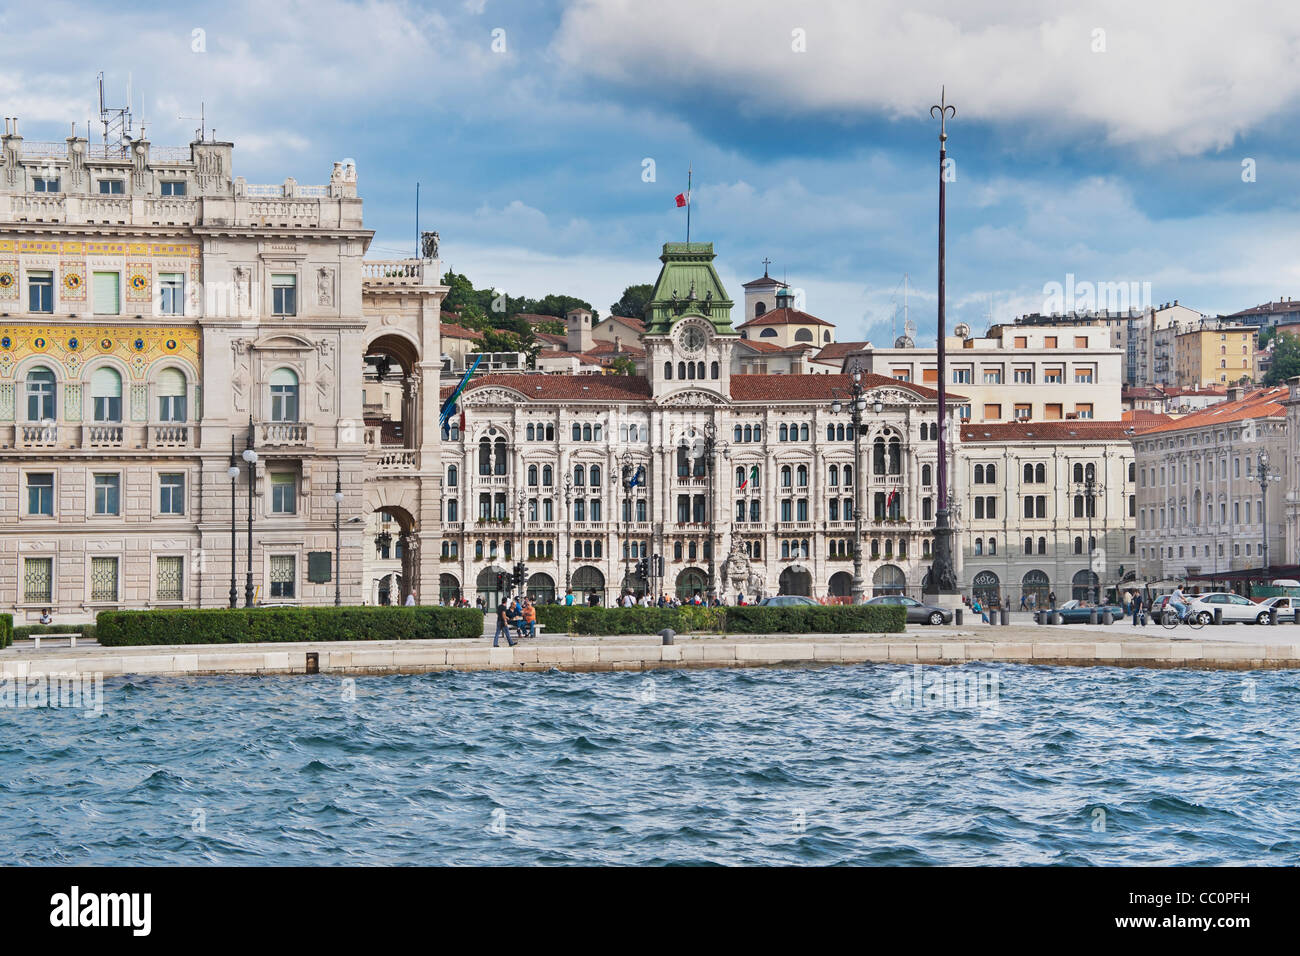 View from the Molo Audace quay to the Piazza Unita d'Italia (Unity of Italy Square).  Trieste, Friuli-Venezia Giulia, Italy Stock Photo